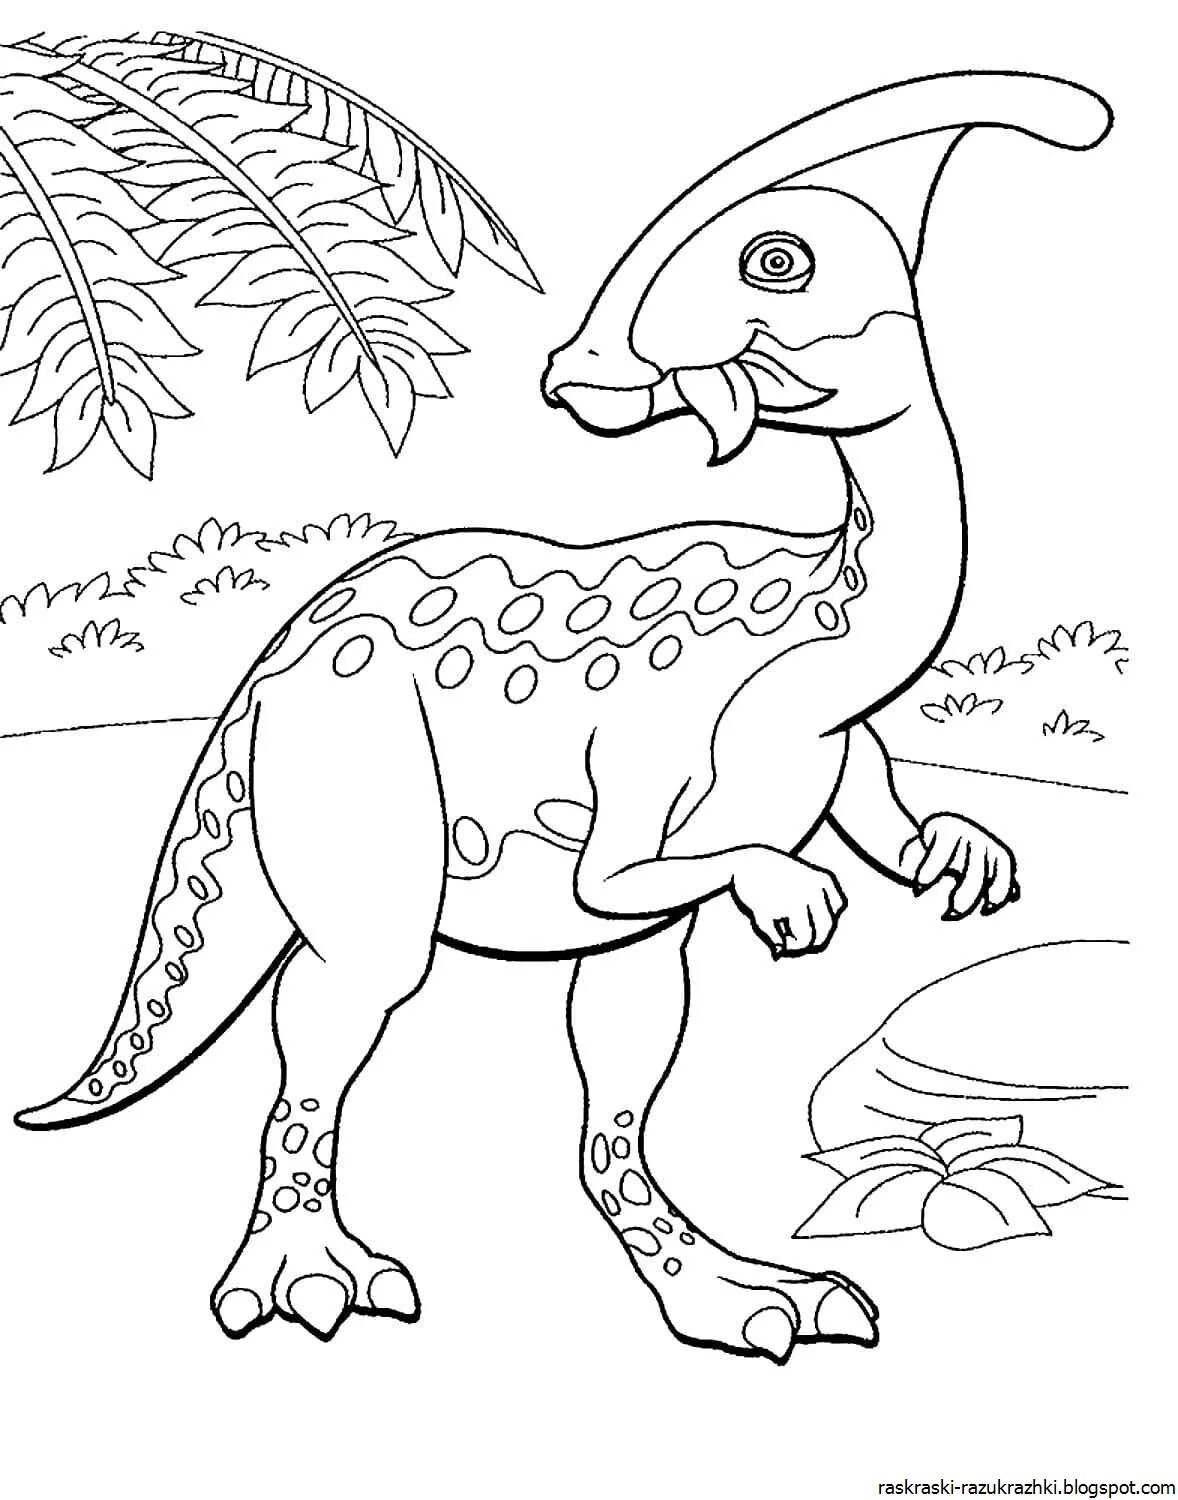 Динозавры раскраска а4. Дино раскраска динозавры. Перри Паразауролоф. Динозавр раскраска для детей. Динозаврики раскраска для детей.